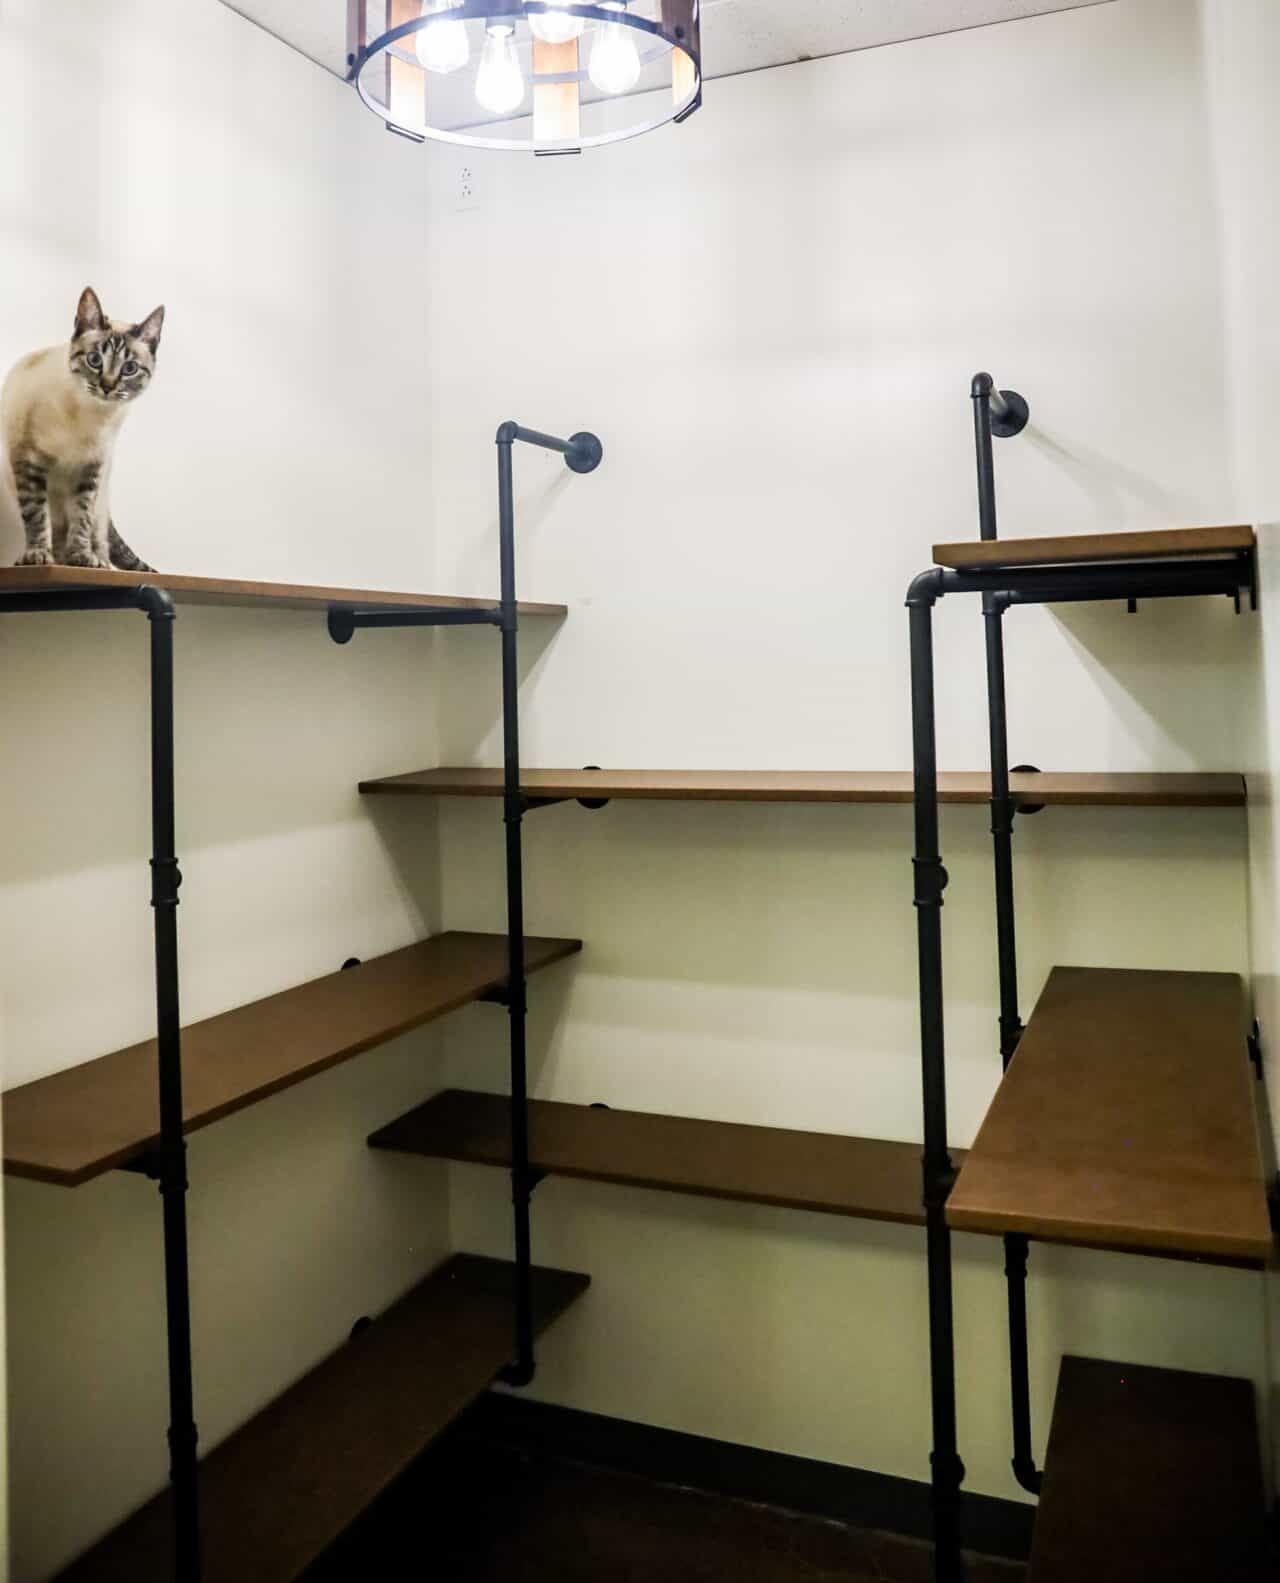 St. Charles multi-level cat condo